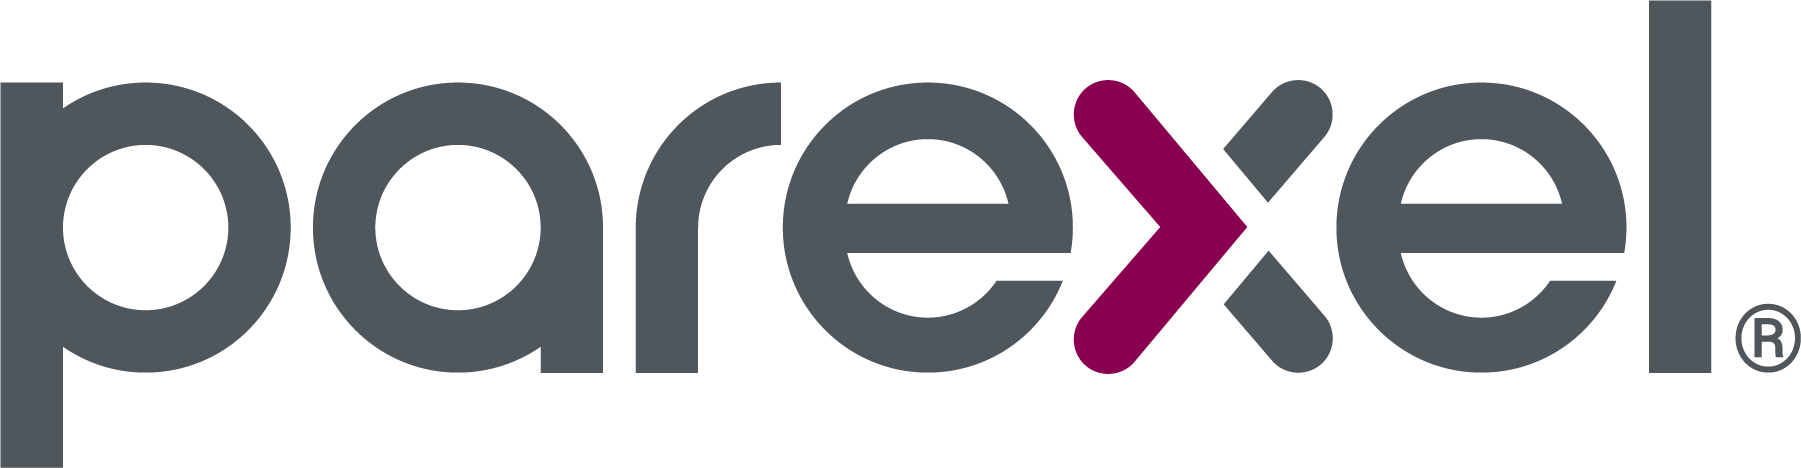 parexel-master-logo-cmyk